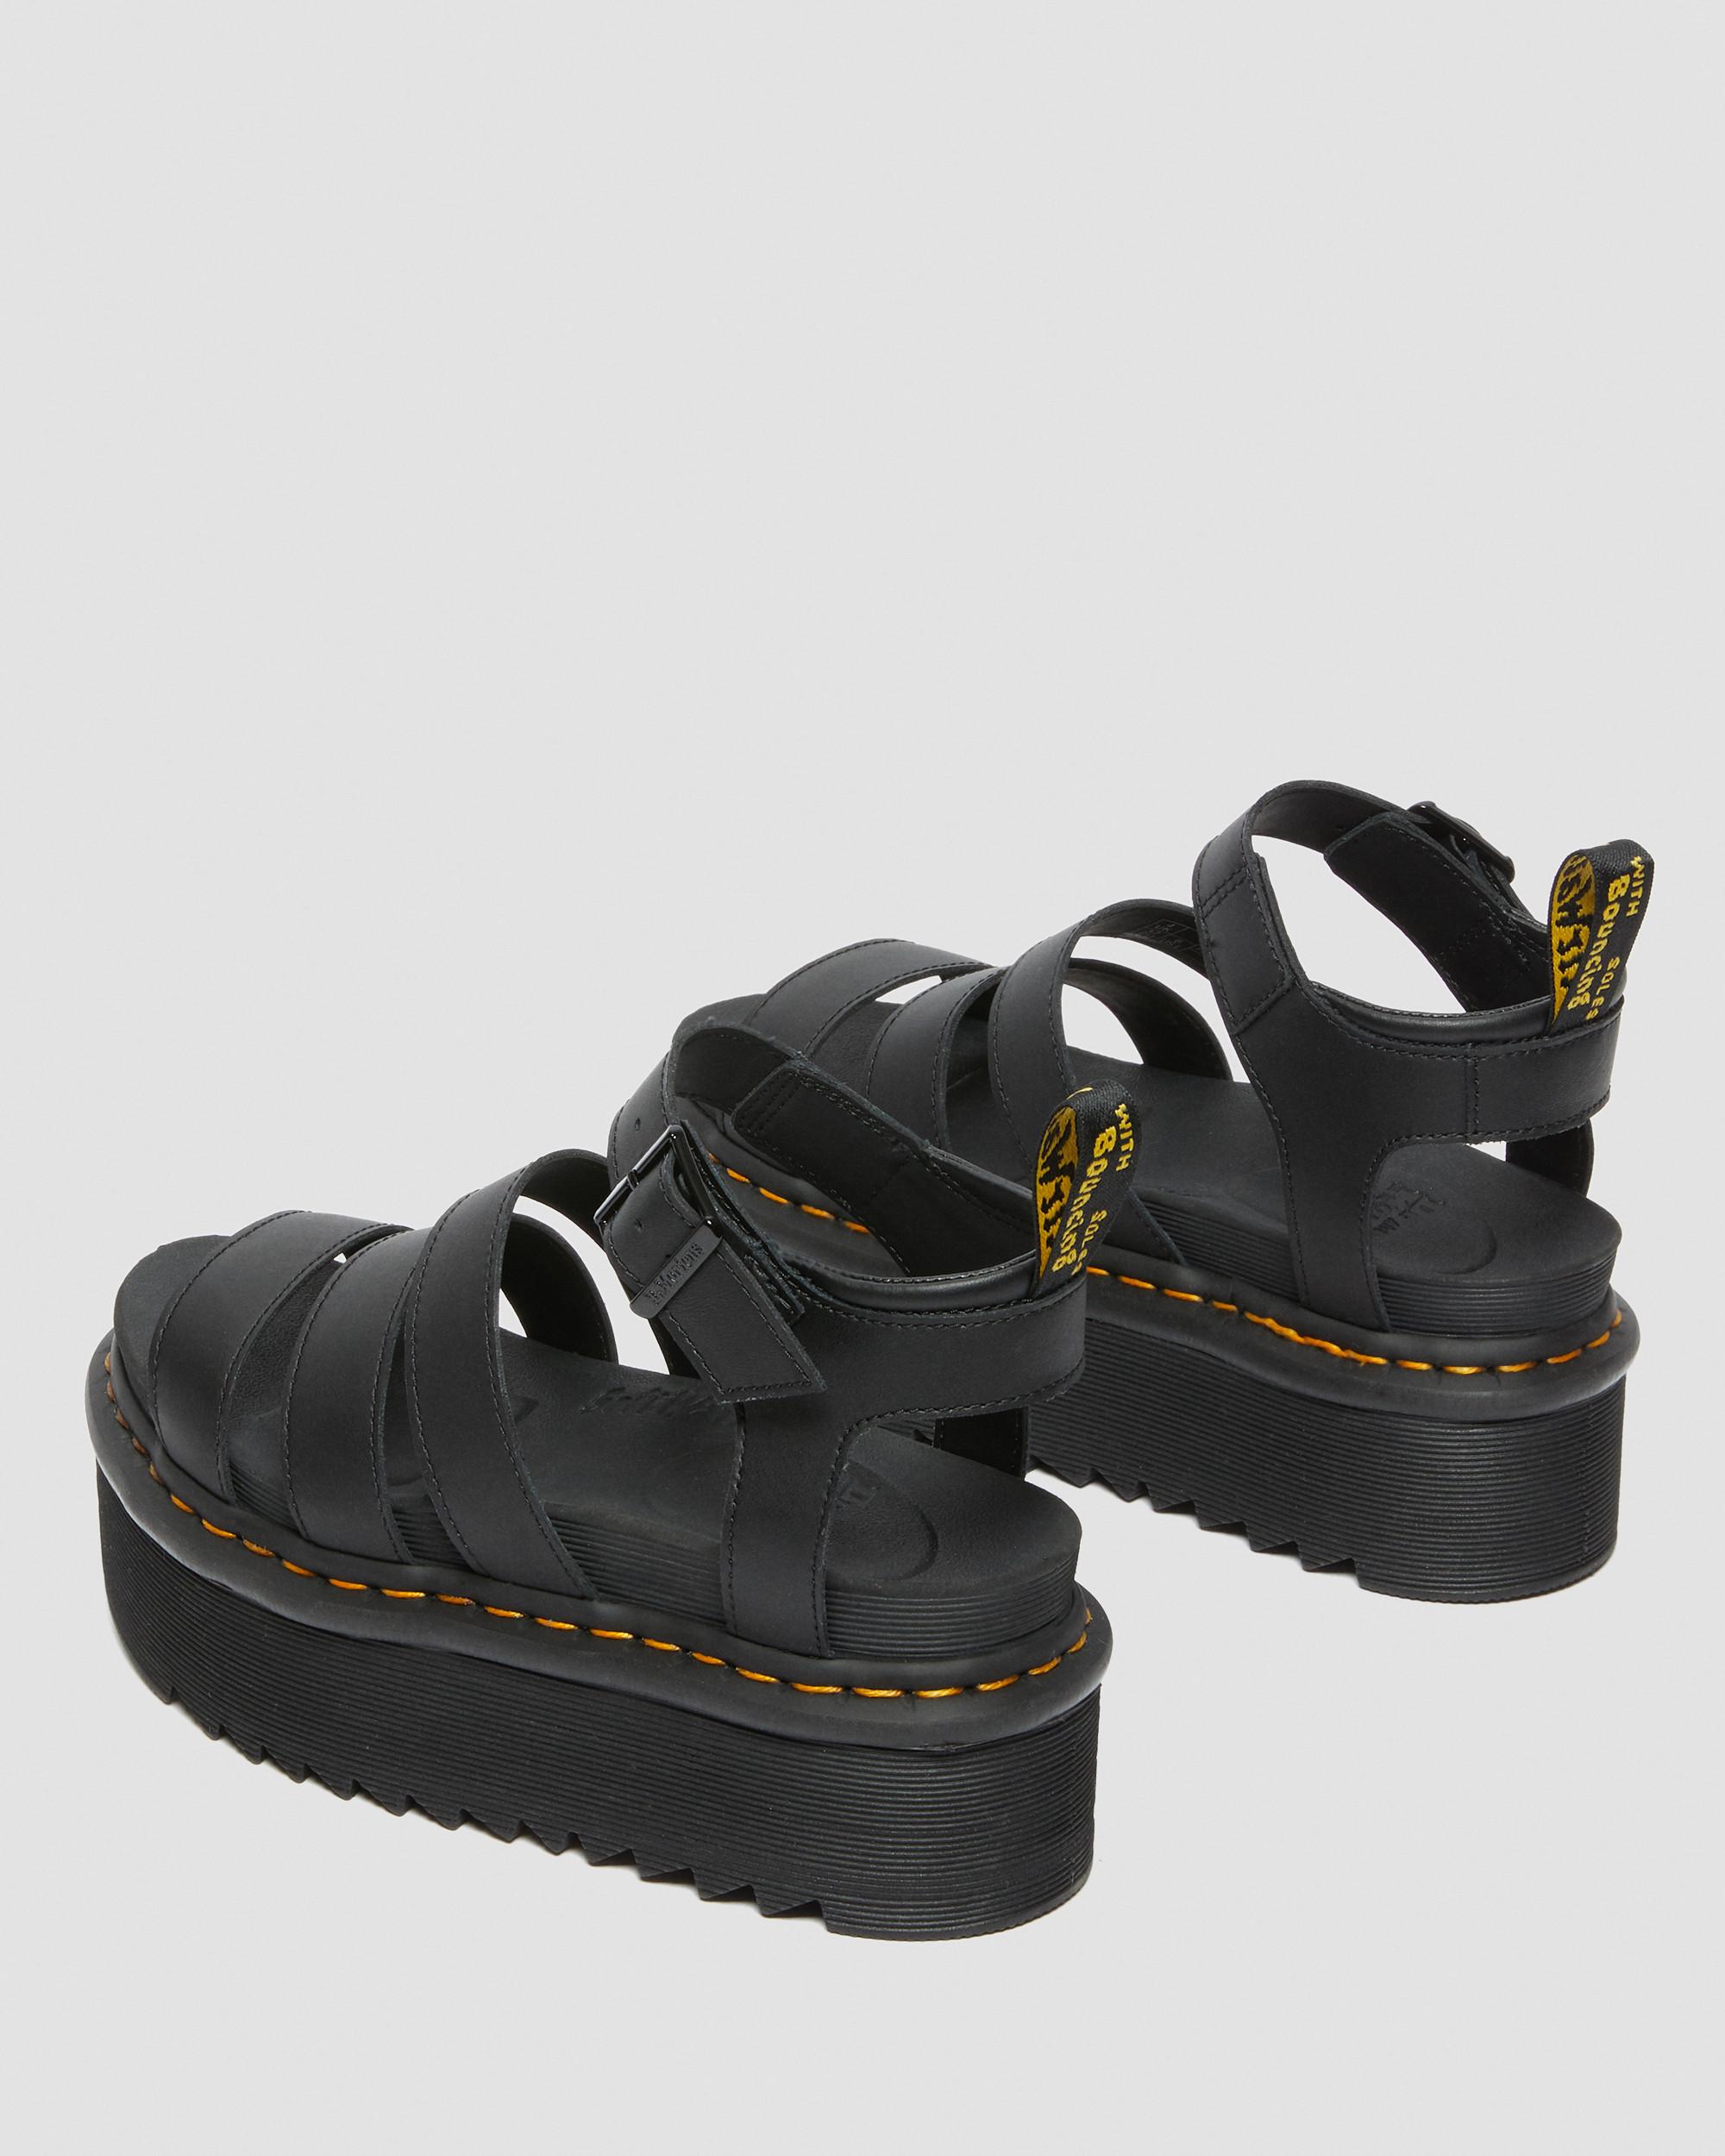 Blaire Quad Hydro Leather Platform Sandals | Dr. Martens